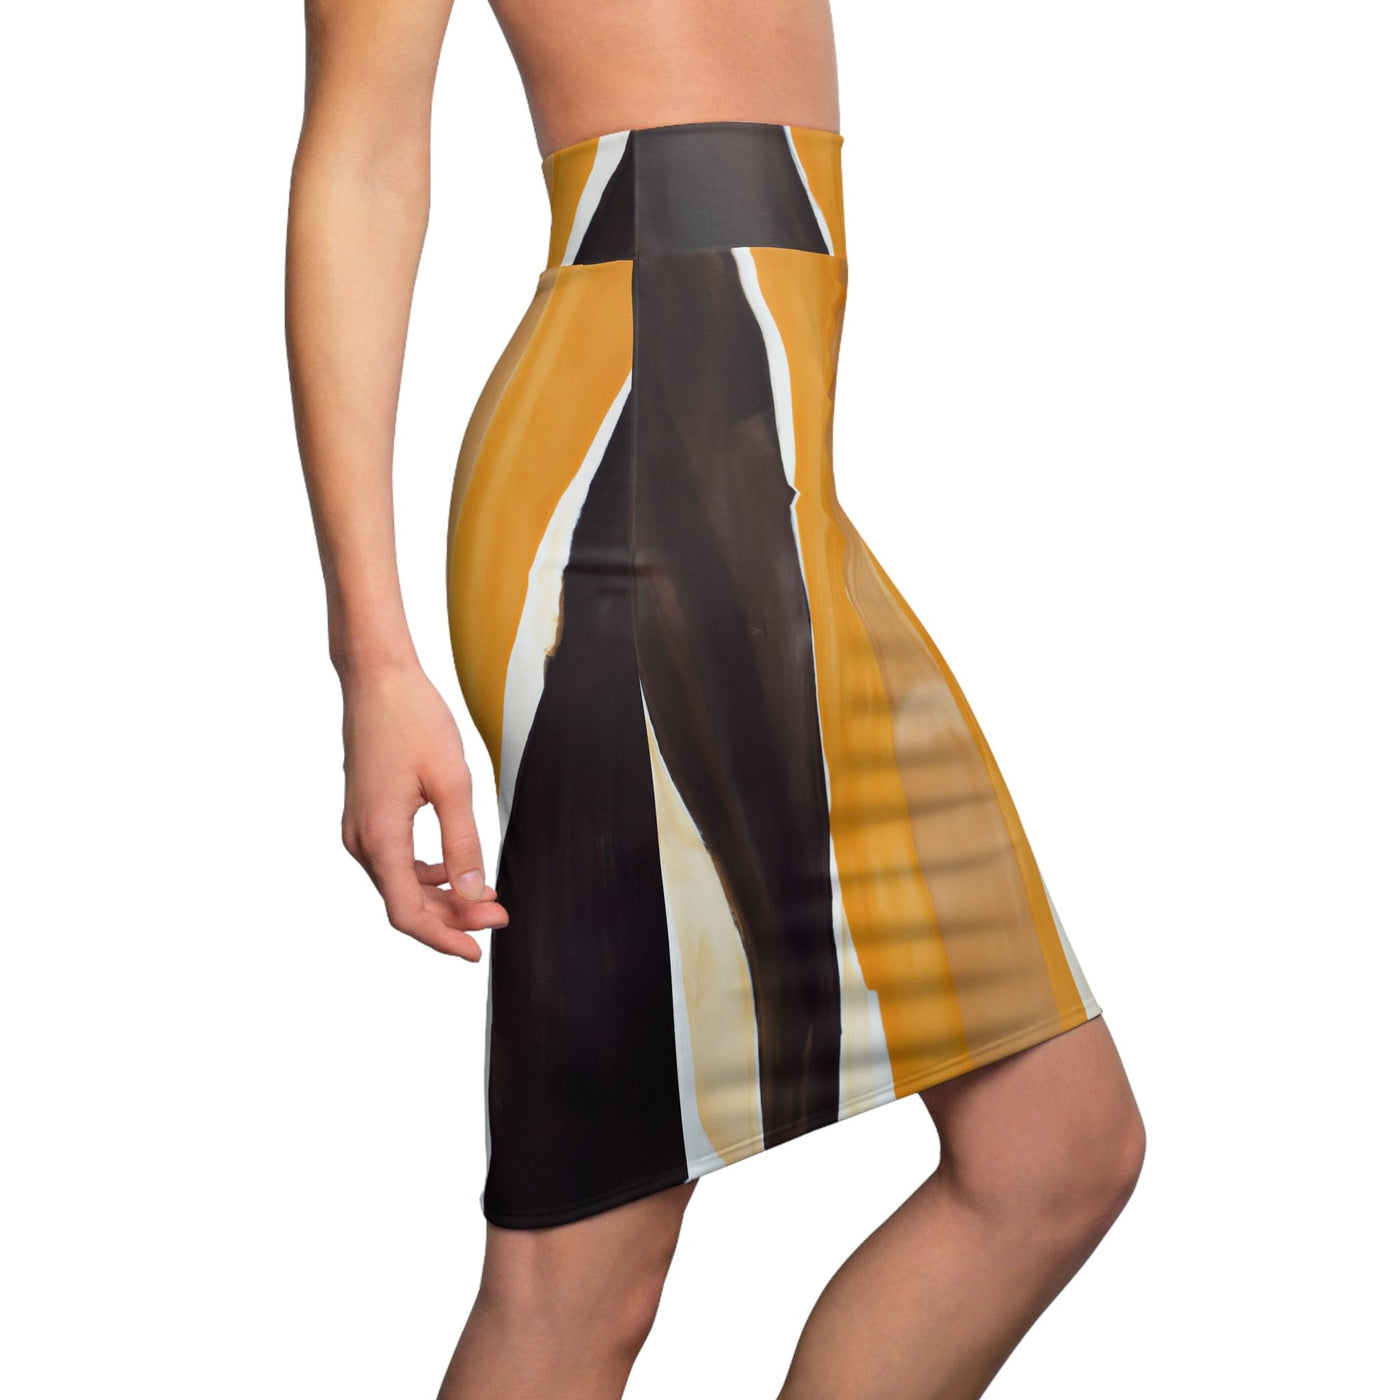 High Waist Womens Pencil Skirt - Contour Stretch - Golden Yellow Brown Abstract